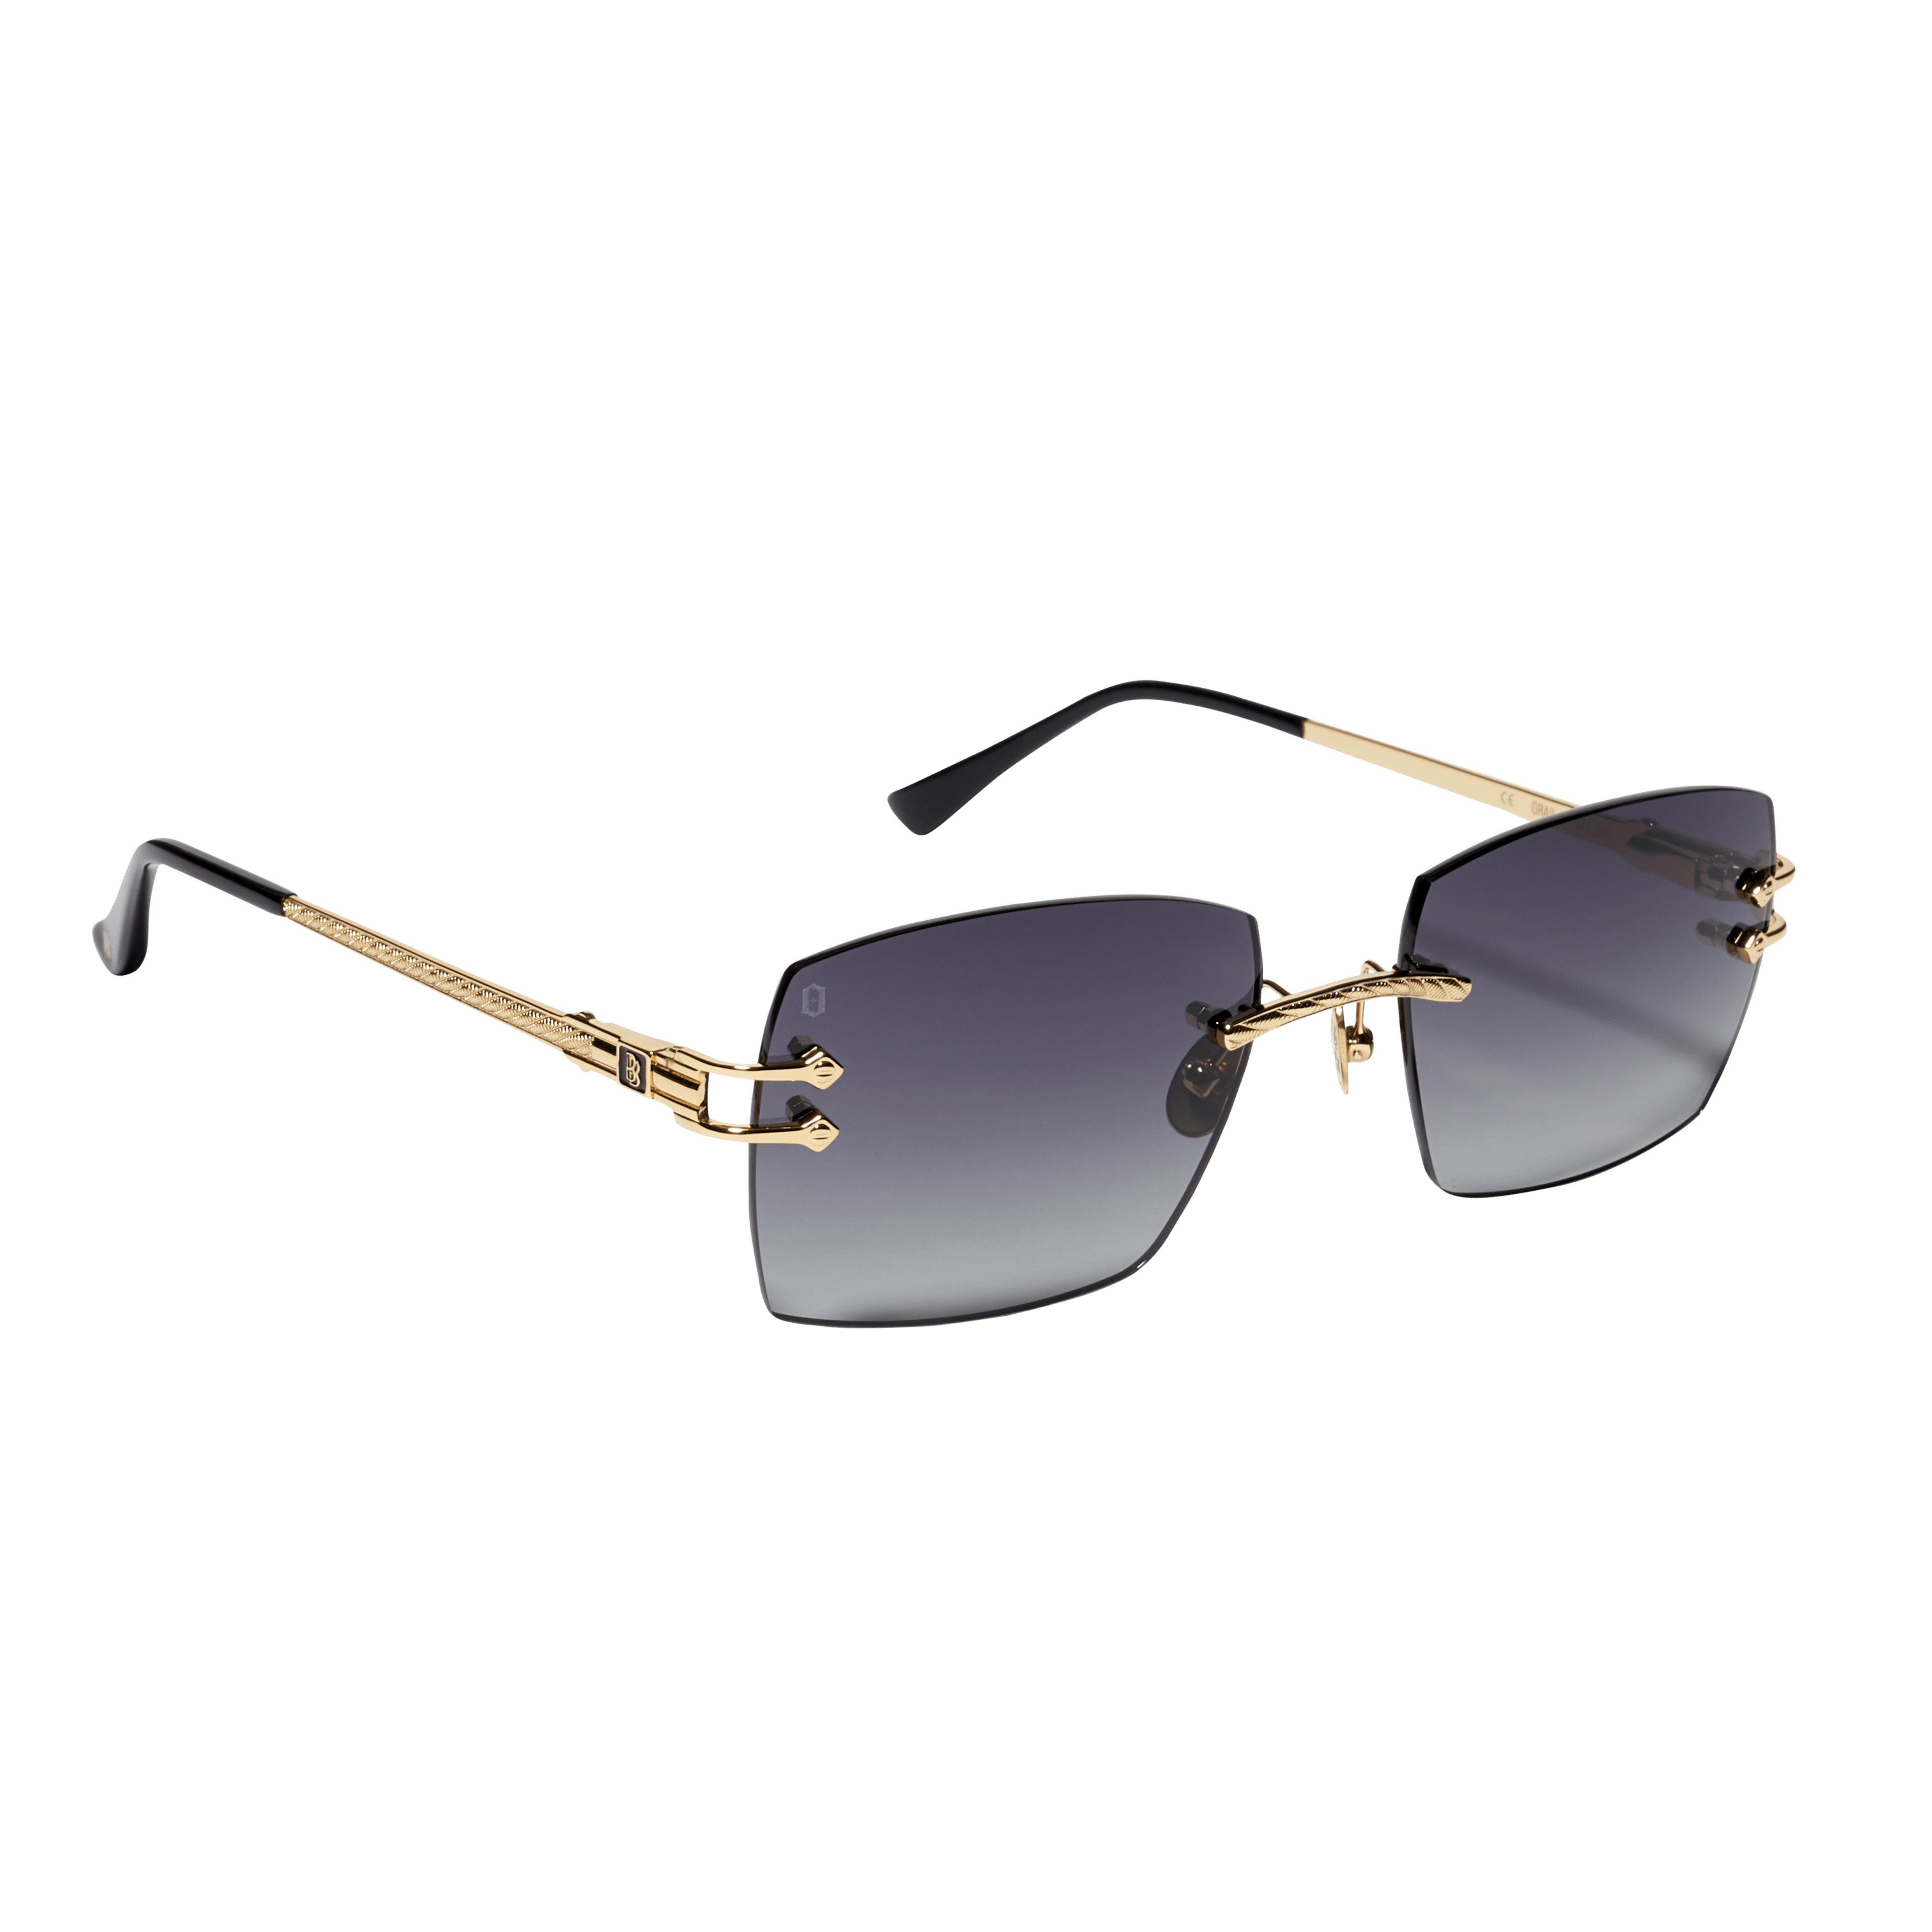 Ben Baller Grail Sunglasses in Gold/Black